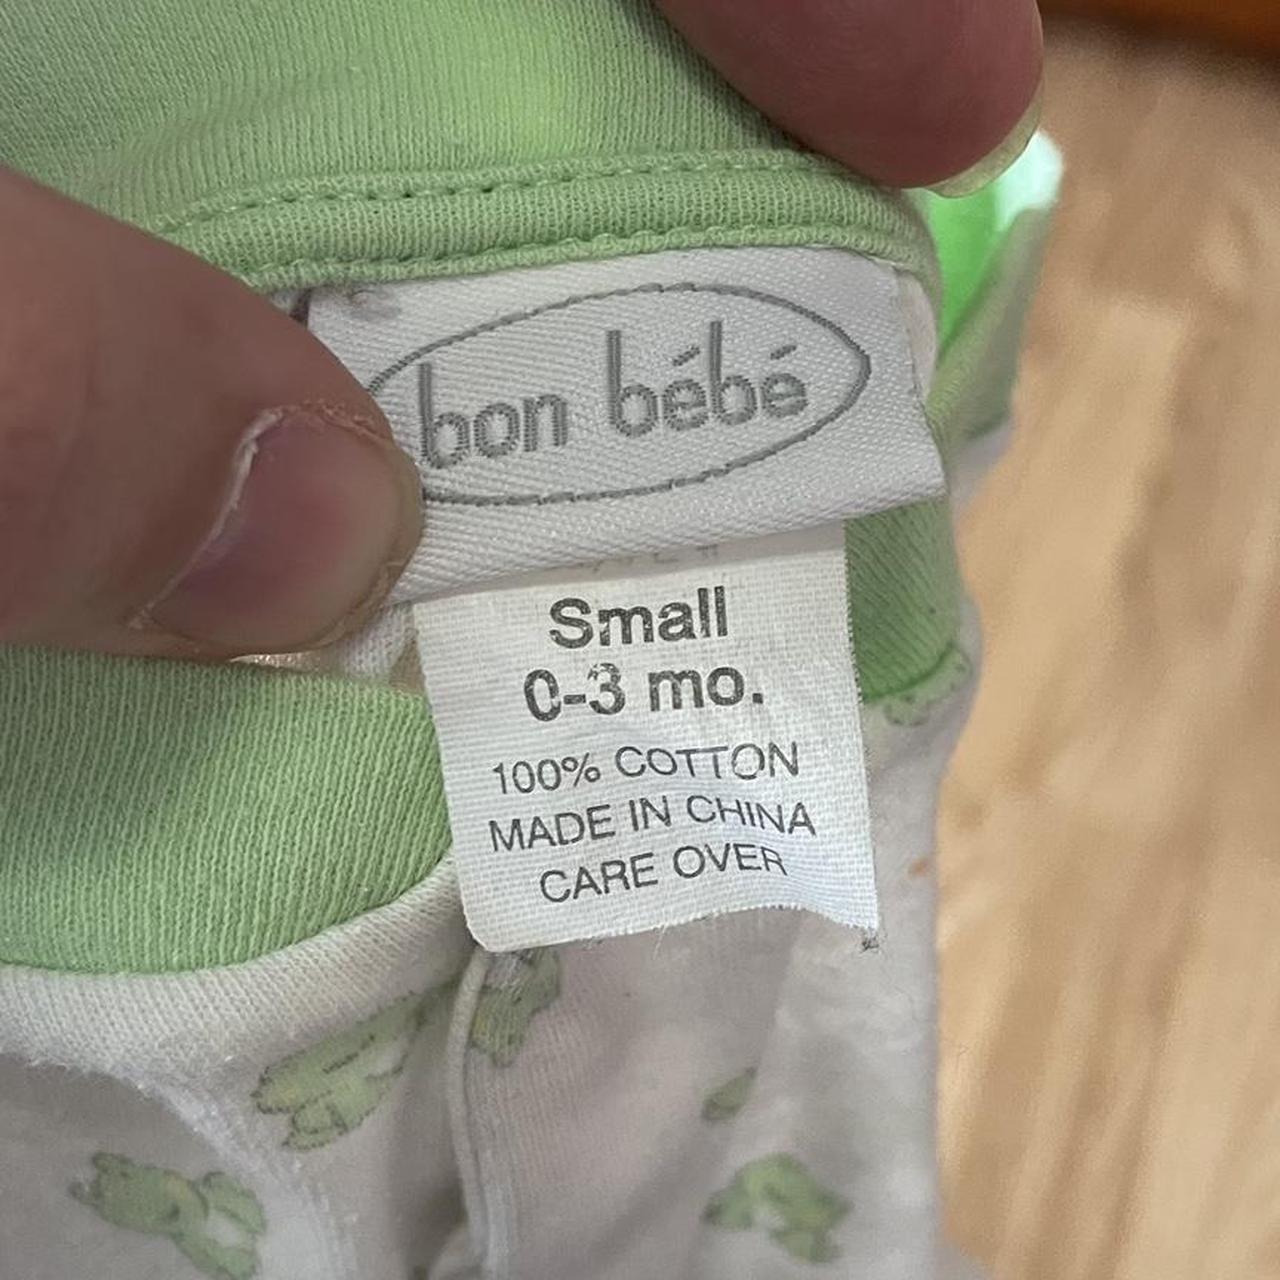 bon bebe Pajamas (4)